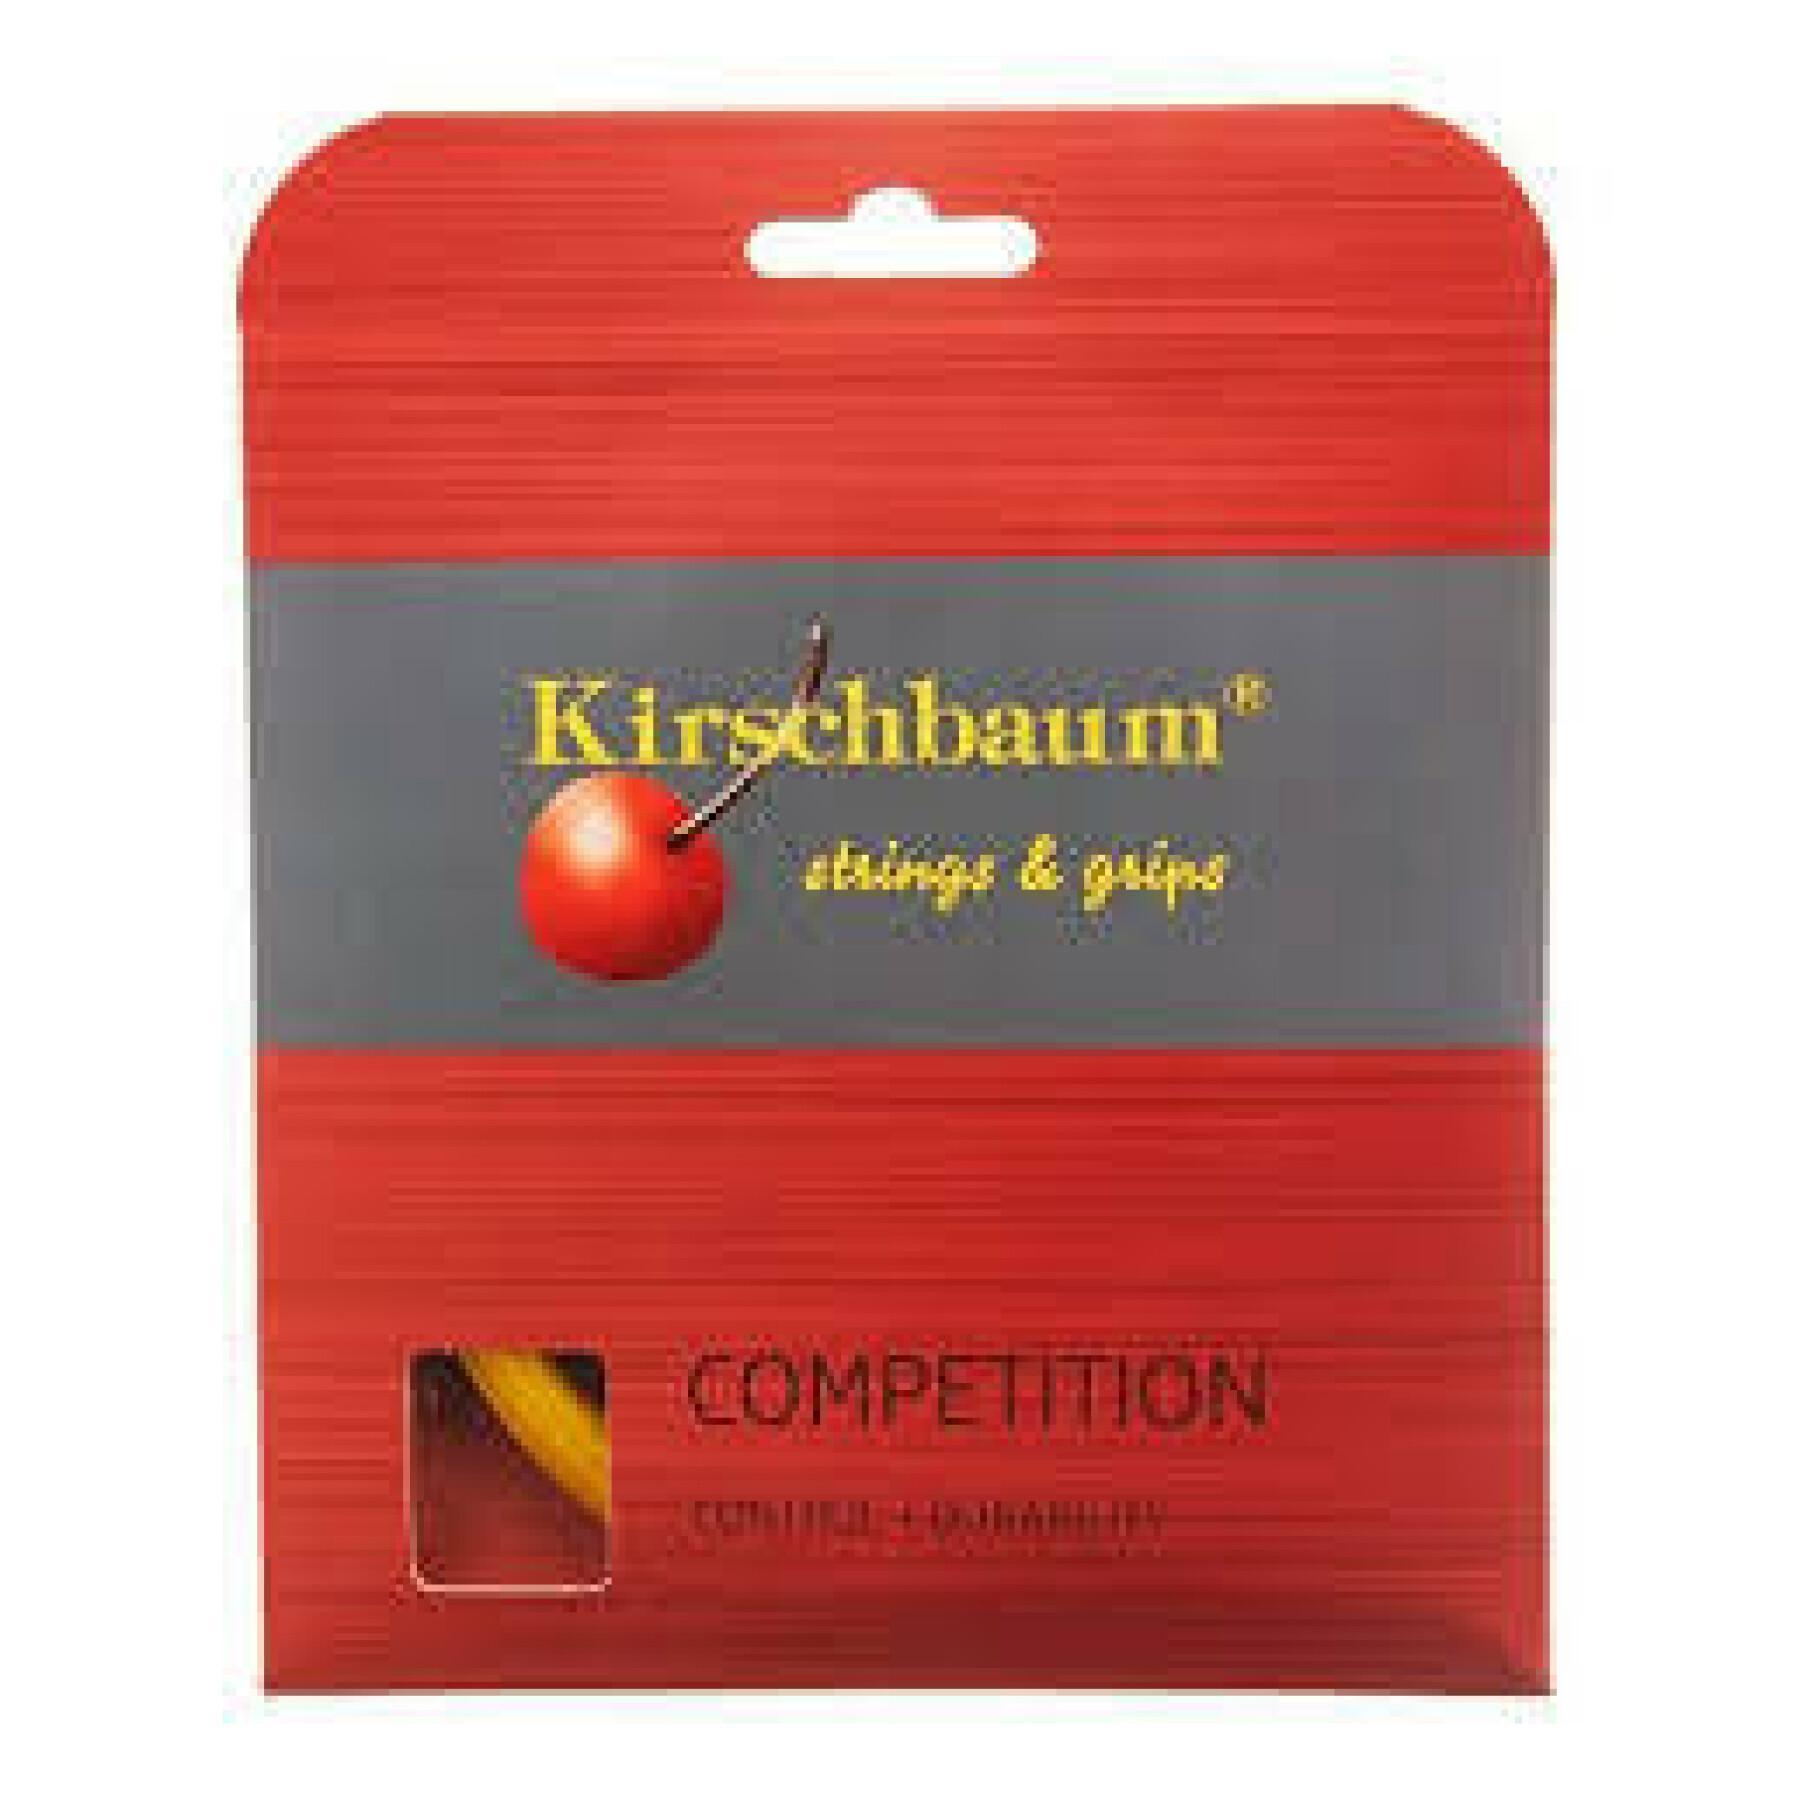 Cordas de ténis Kirschbaum Competition 12 m